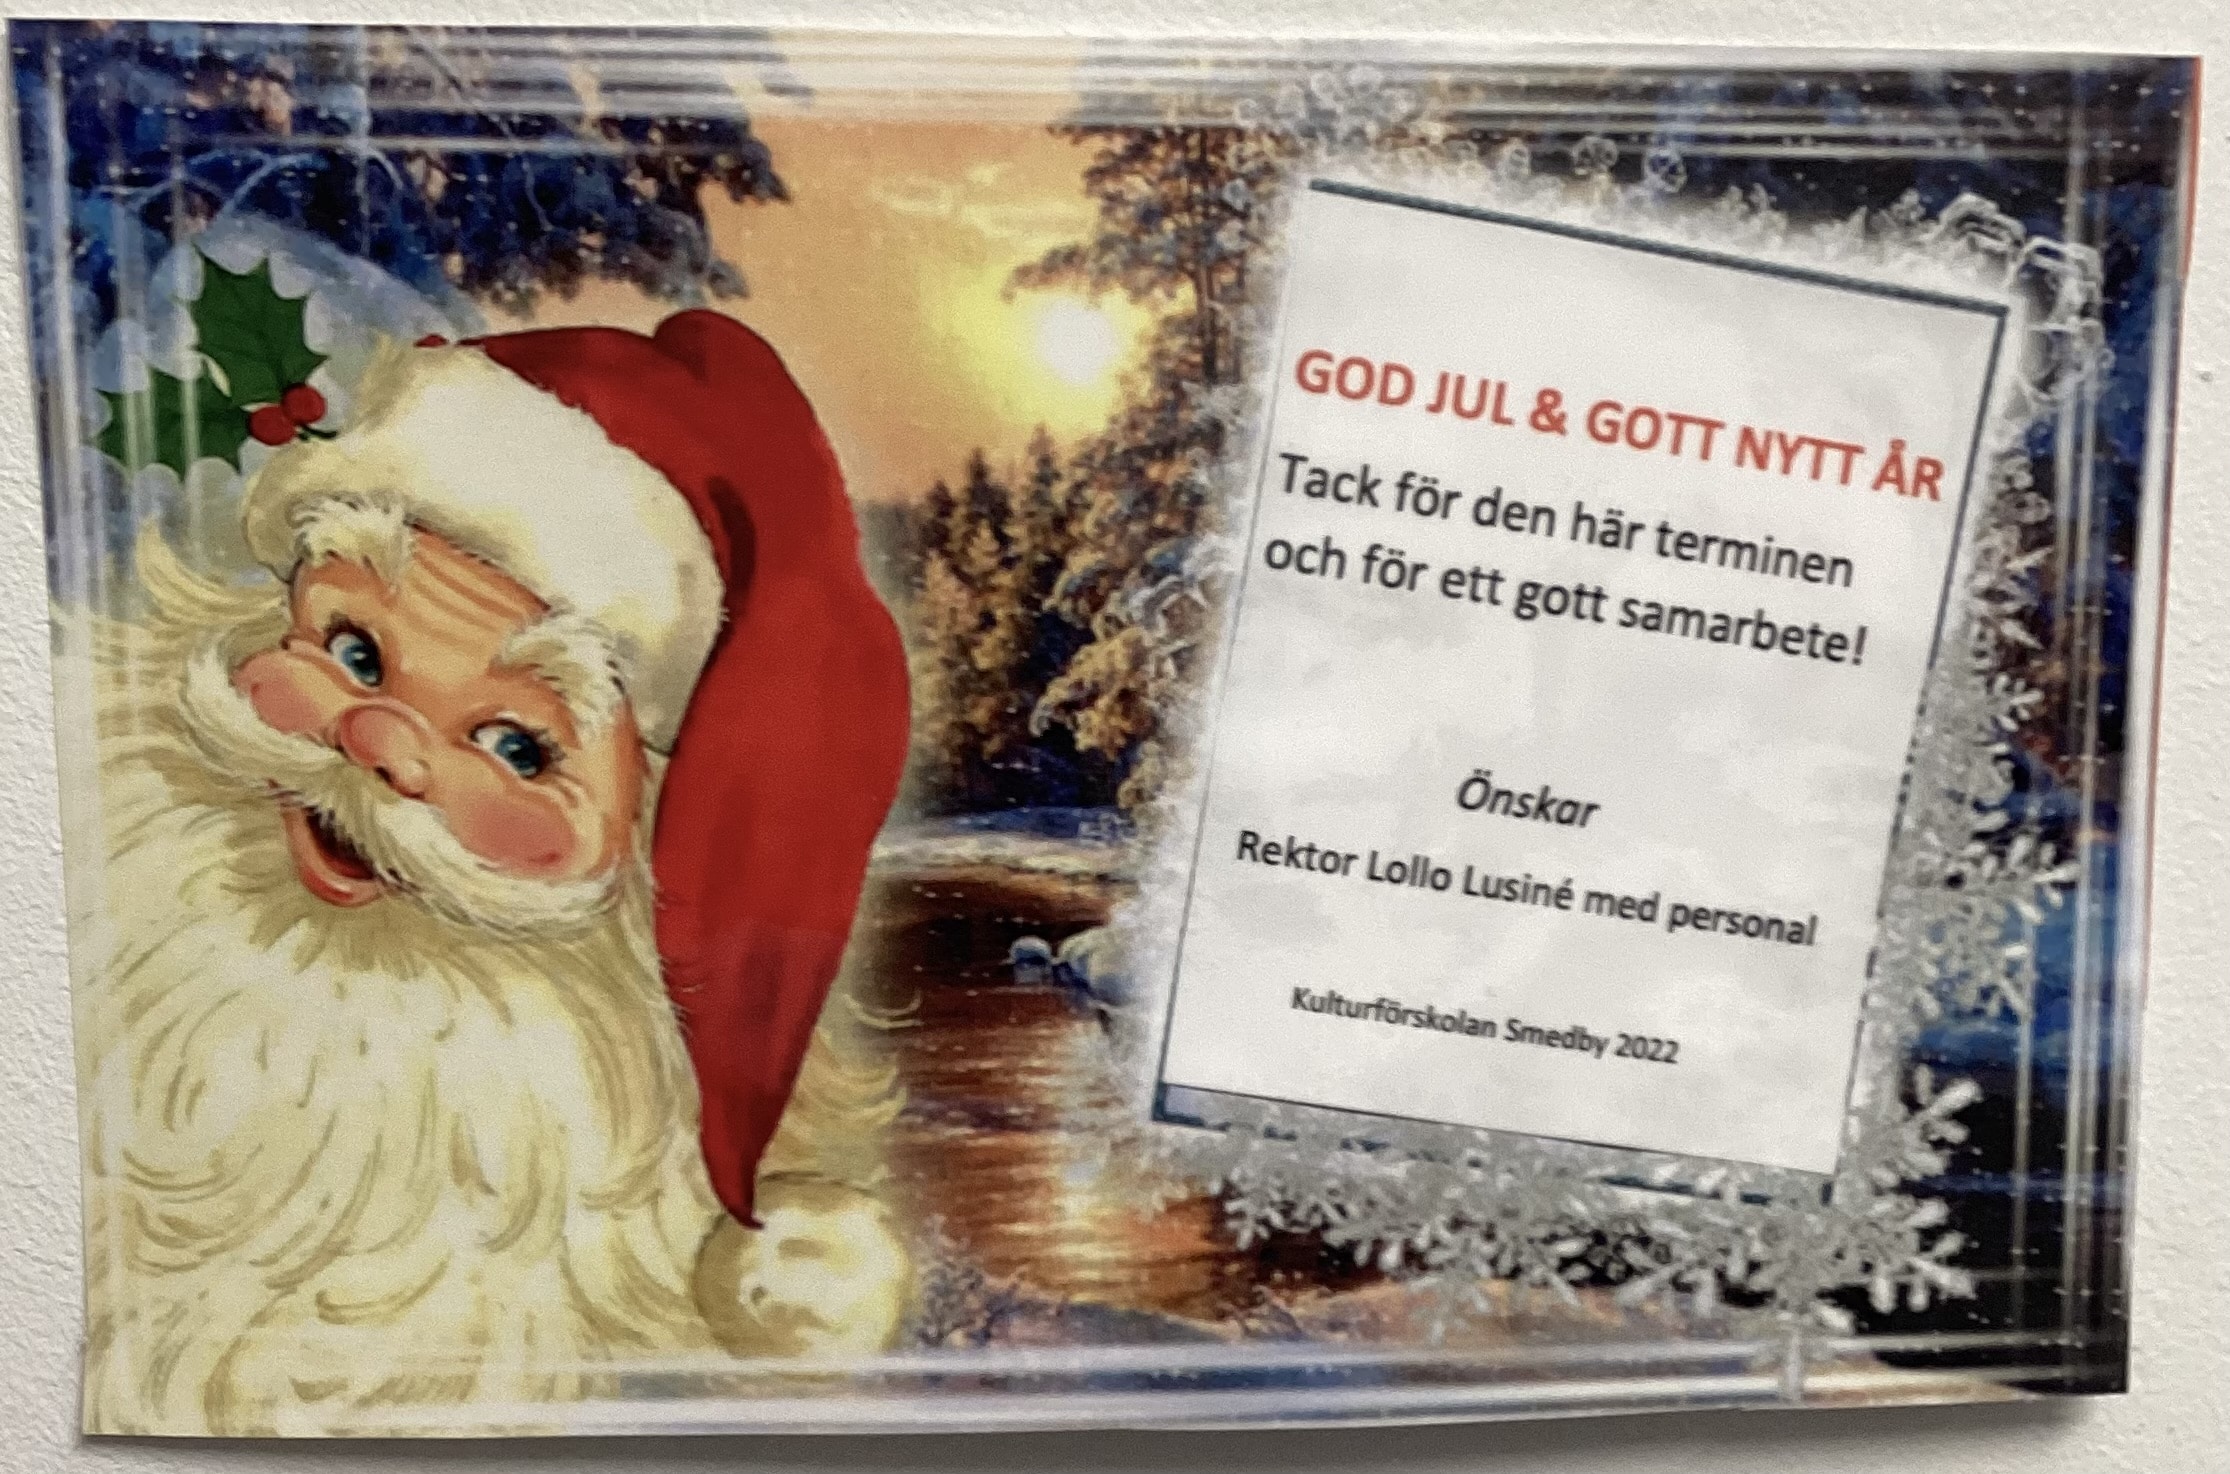 God jul från kulturförskolan Smedby